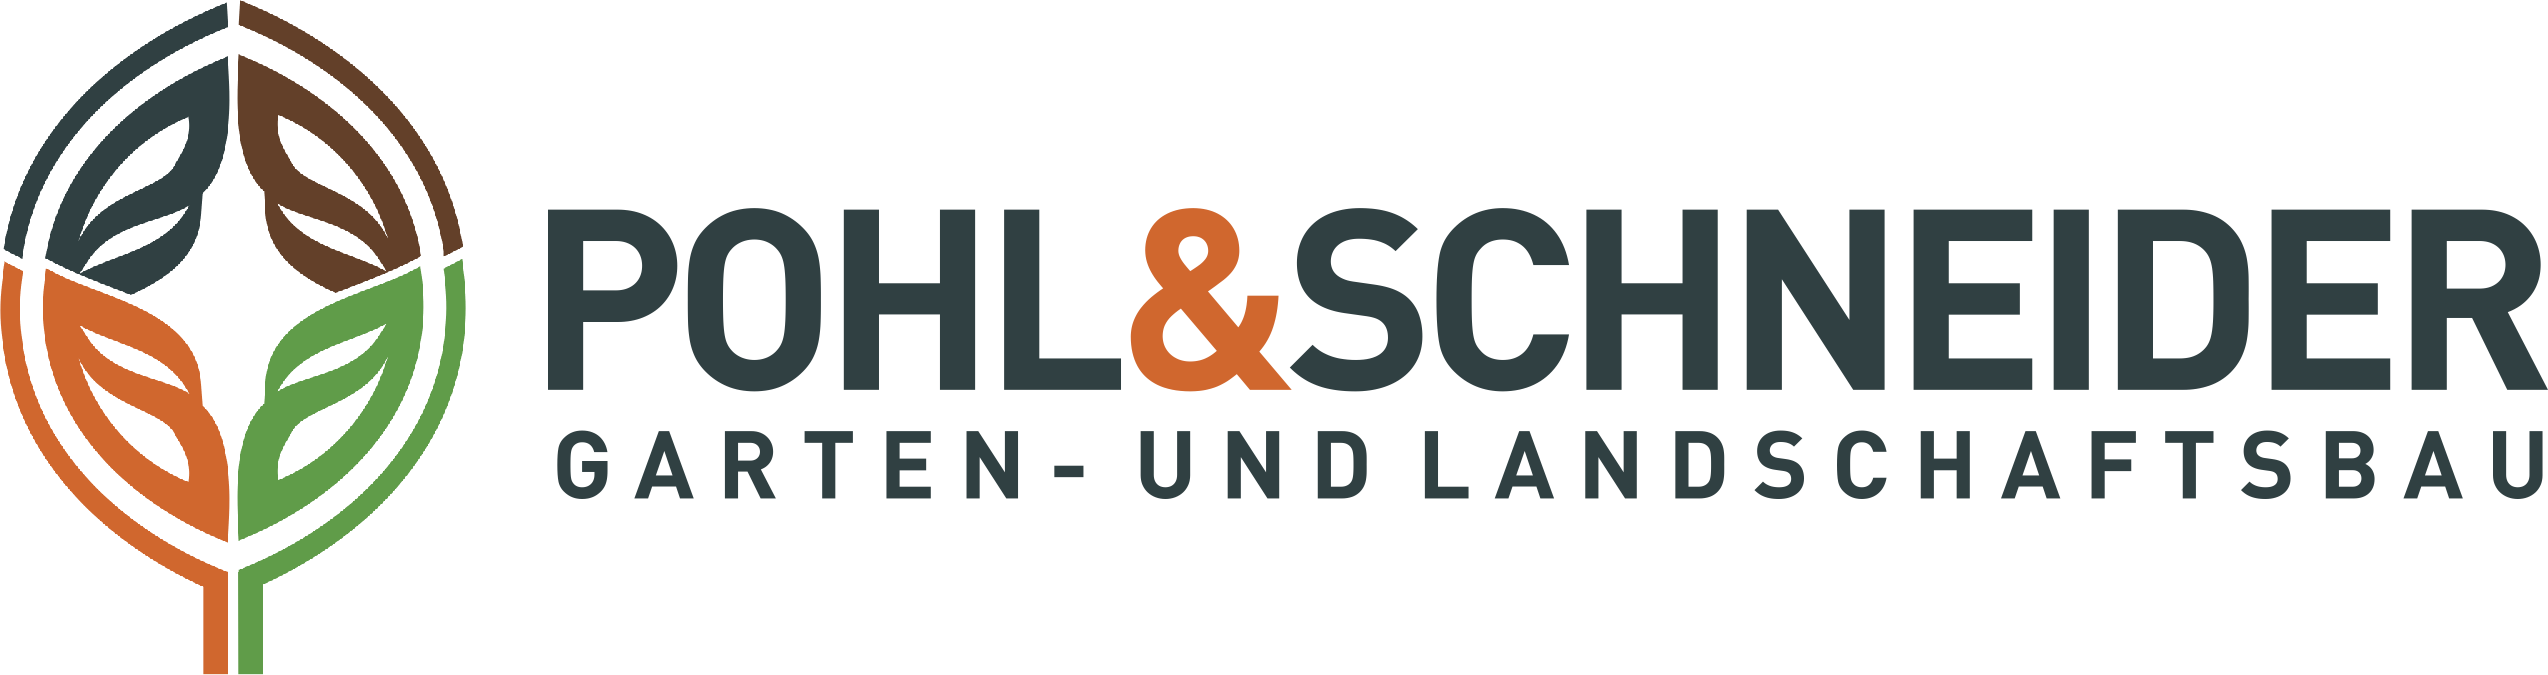 Garten- und Landschaftsbau Pohl & Schneider